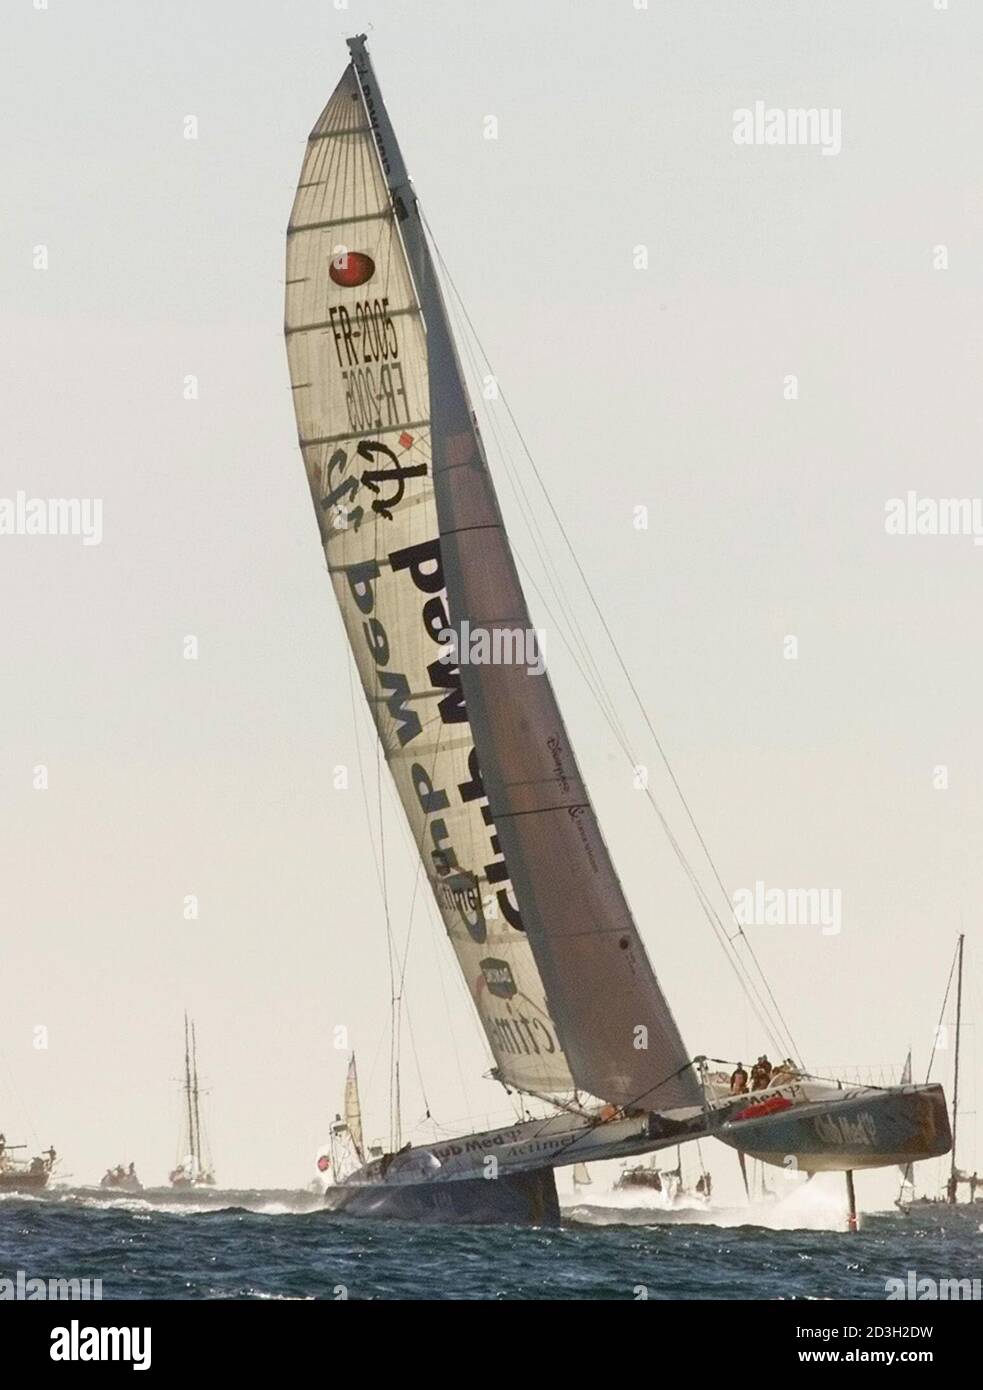 El catamarán French Club Med cruza la línea de salida frente al Port  Olímpic de Barcelona el 31 de diciembre de 2000. La Carrera consiste en un  circuito completo alrededor de la